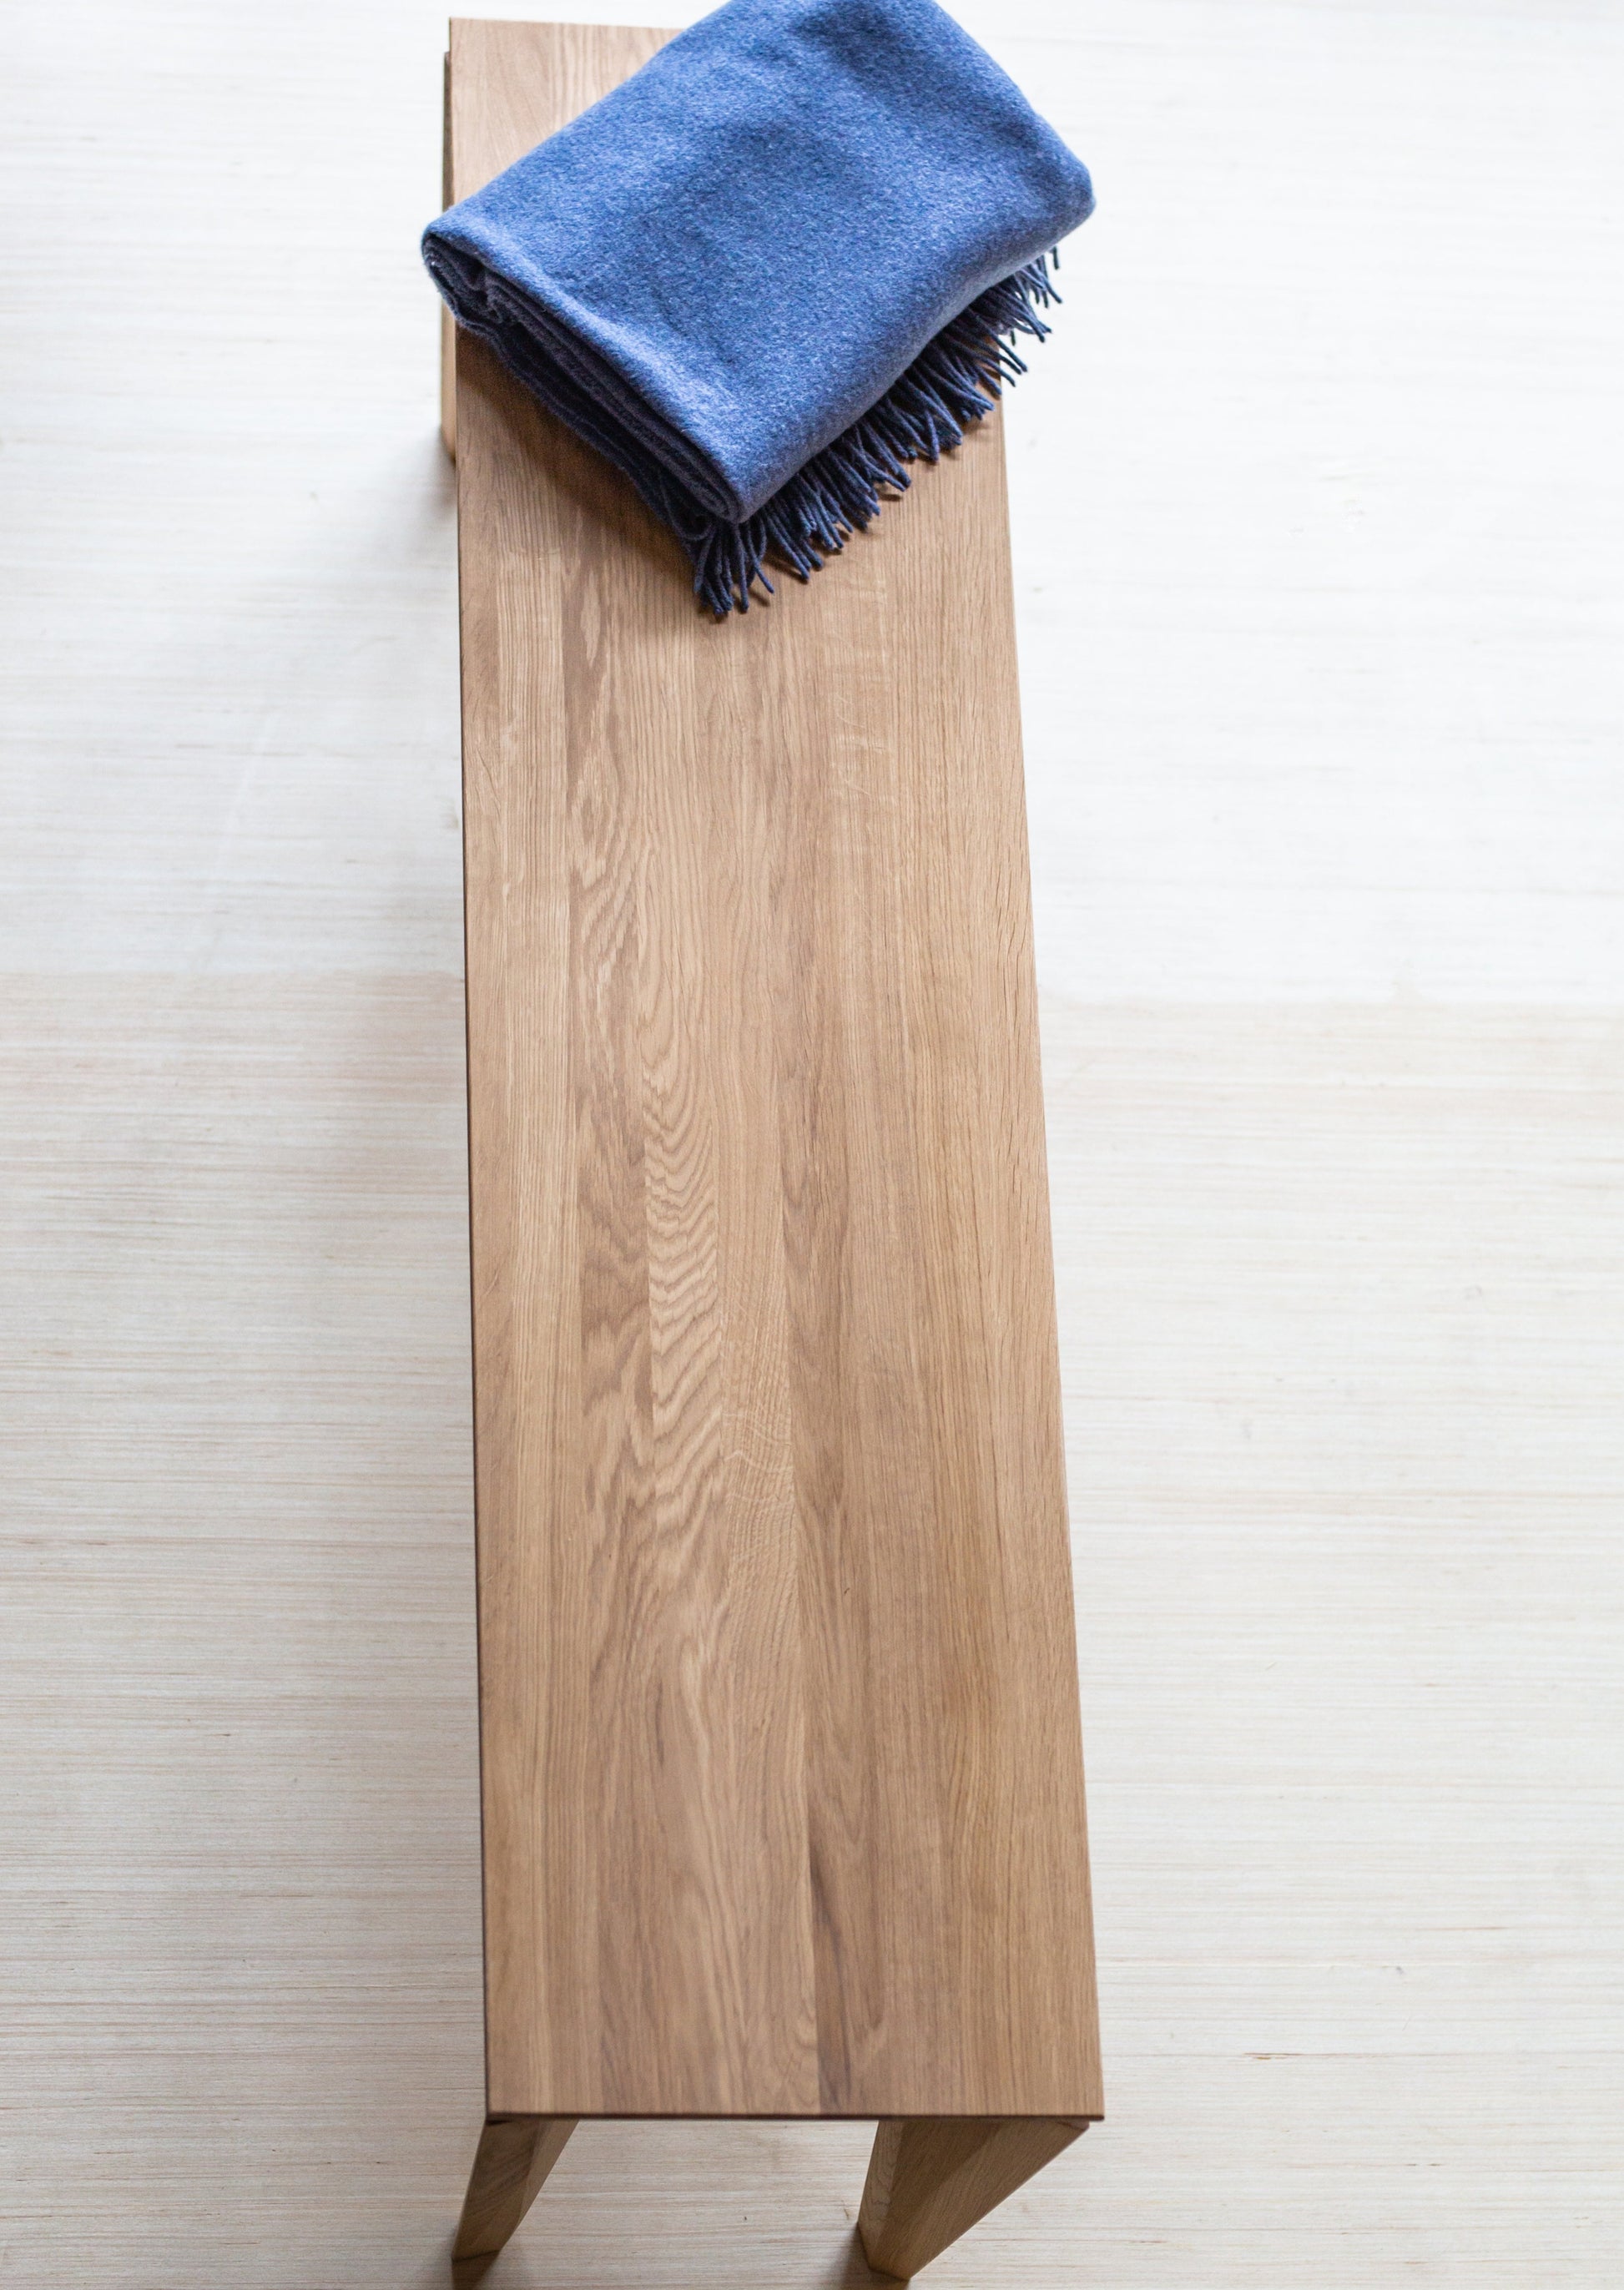 Sittebenken Peka er laget av høyeste kvalitet lys eik. Denne sittebenken har elegante og moderne former, med unike bein.